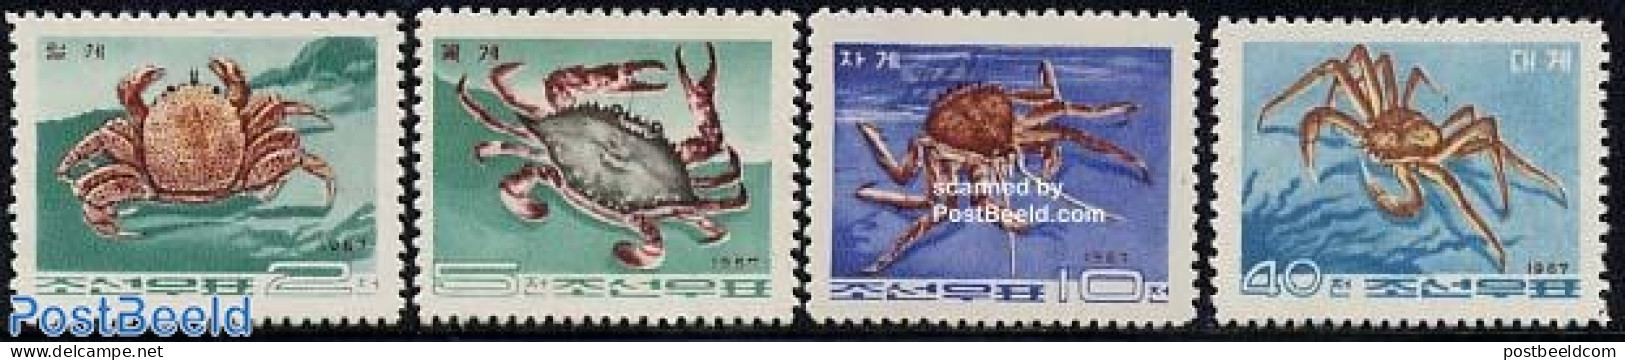 Korea, North 1967 Crabs 4v, Mint NH, Nature - Shells & Crustaceans - Crabs And Lobsters - Vita Acquatica